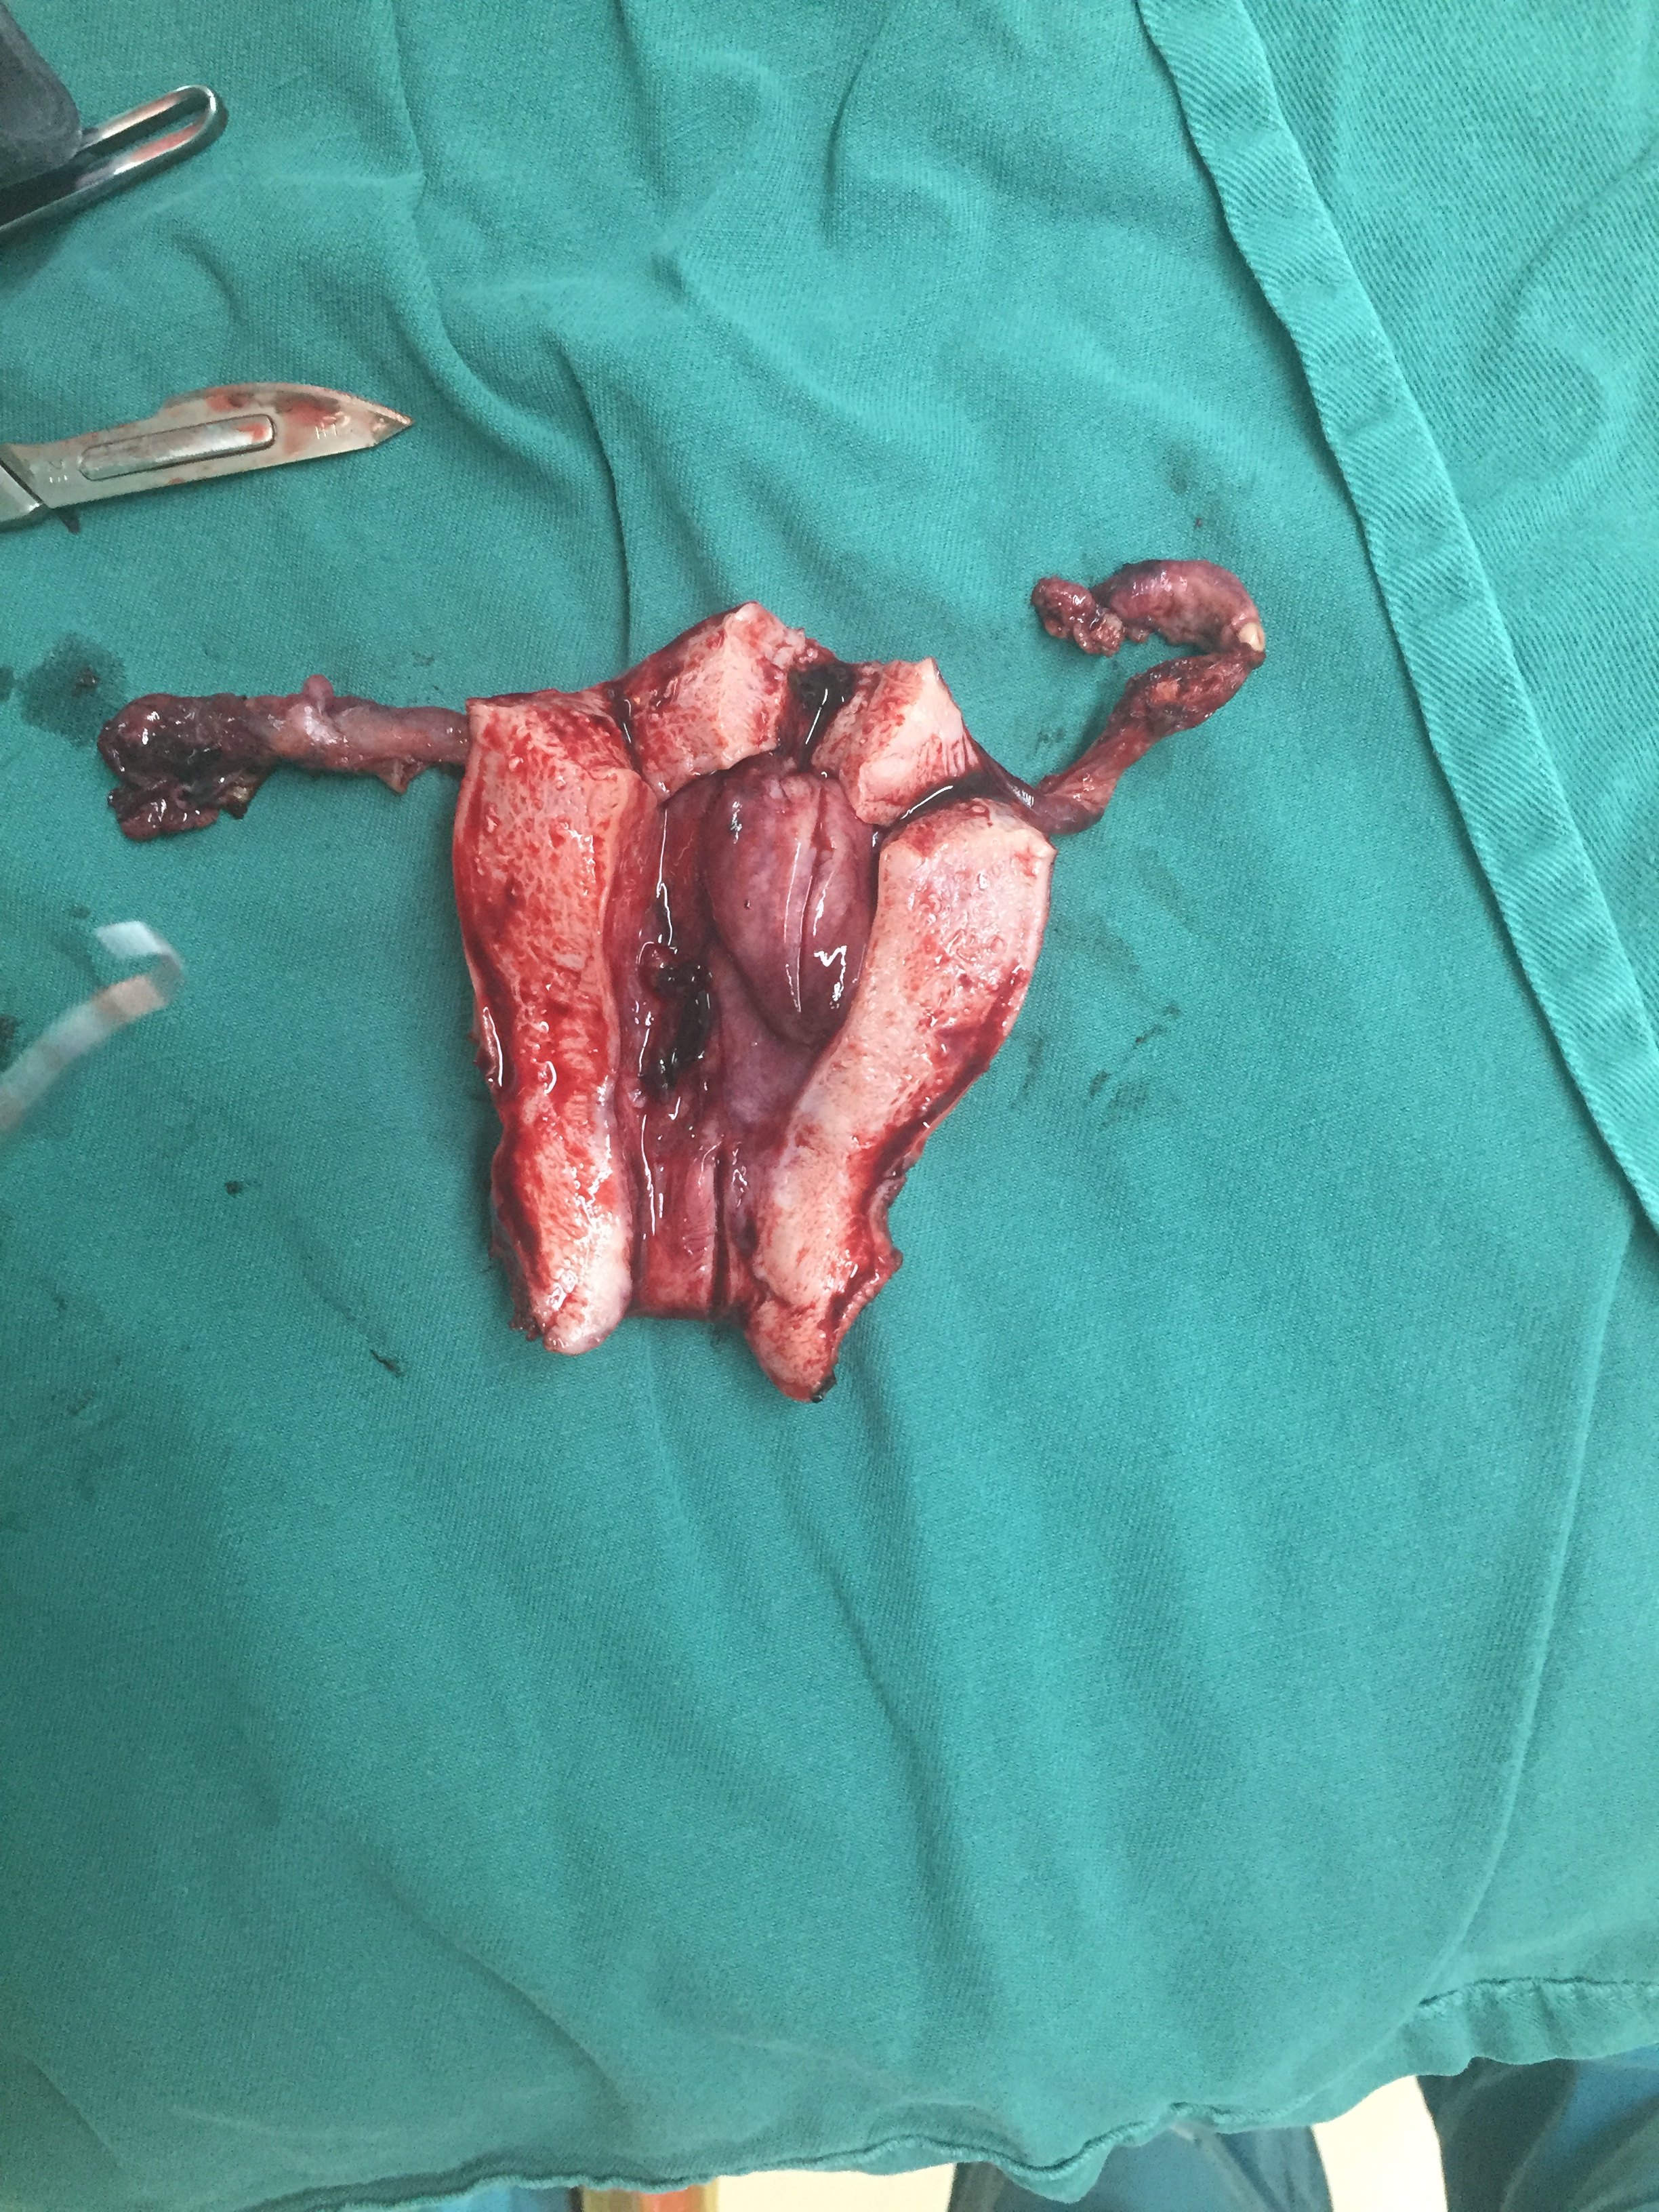 5*2cm大小息肉患者因绝经后反复阴道流血诊刮治疗2次,要求切除子宫